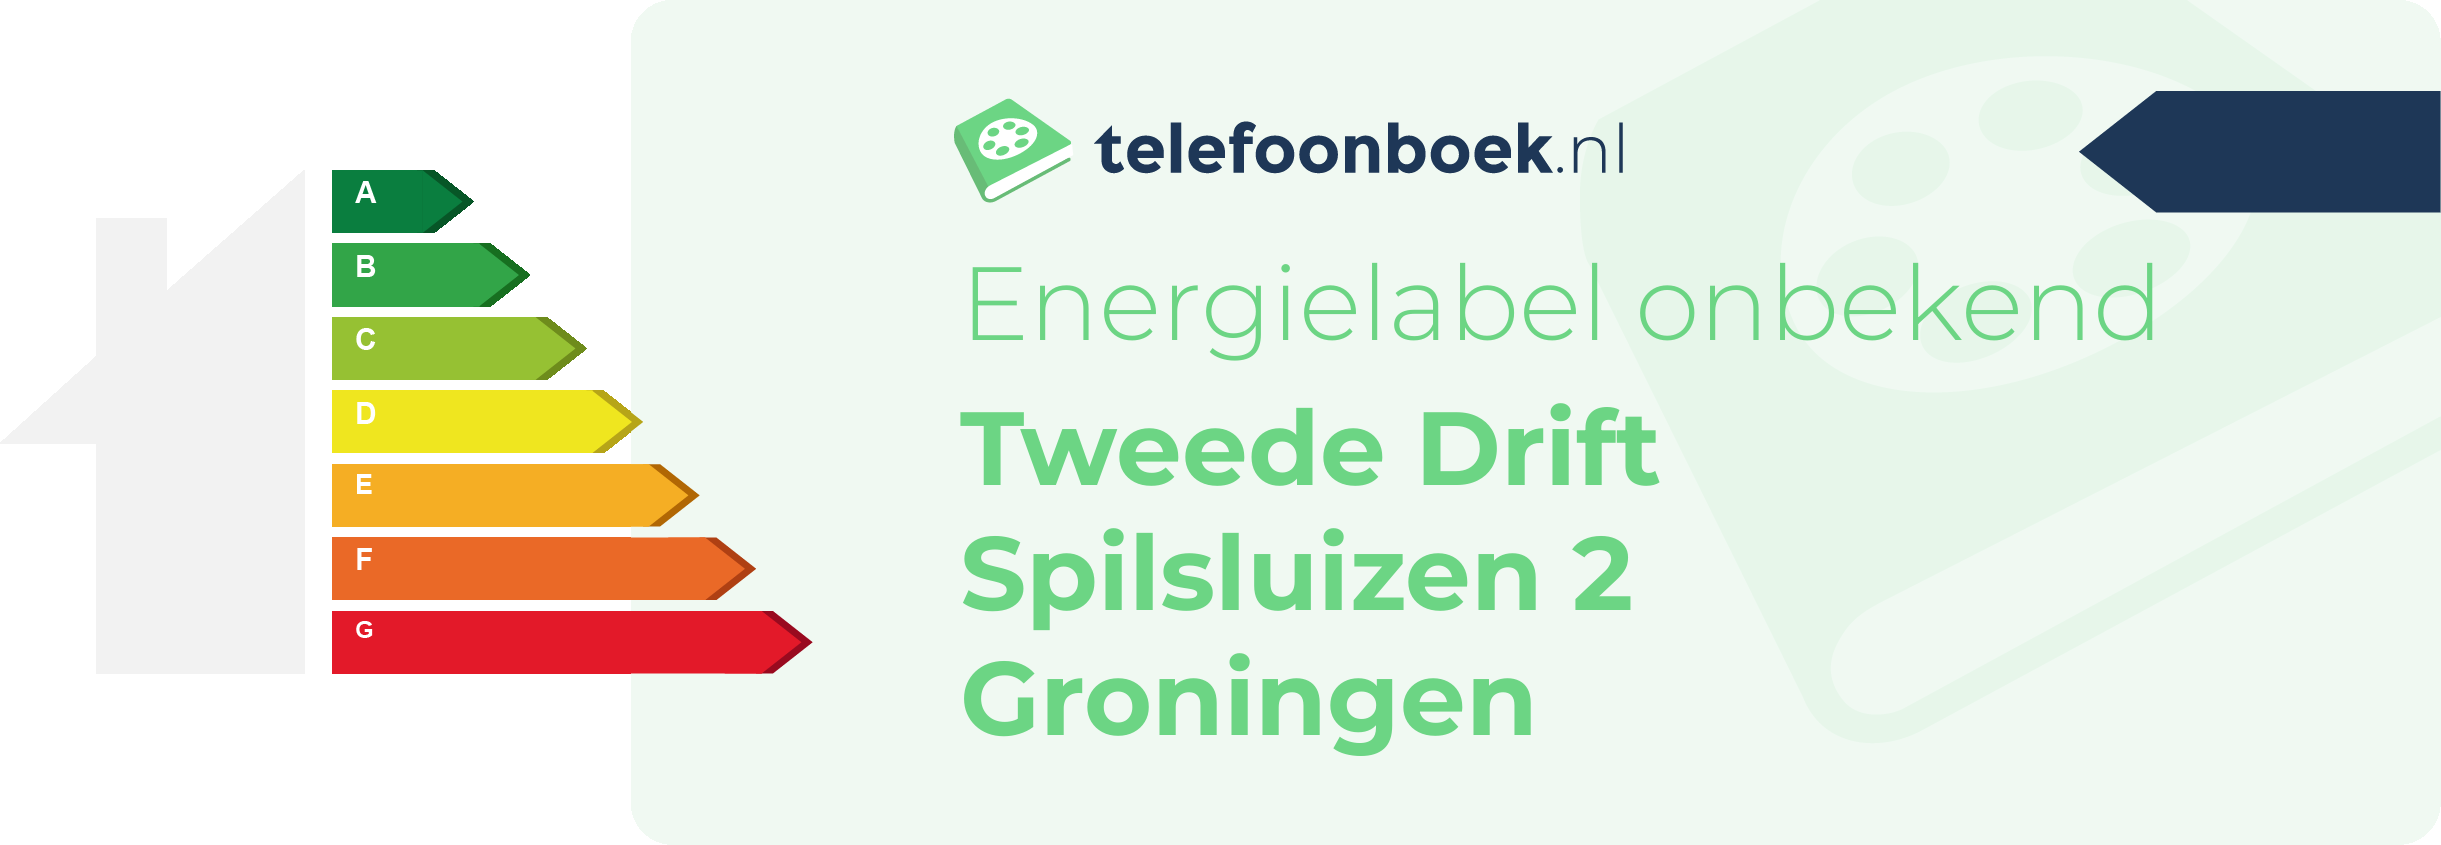 Energielabel Tweede Drift Spilsluizen 2 Groningen